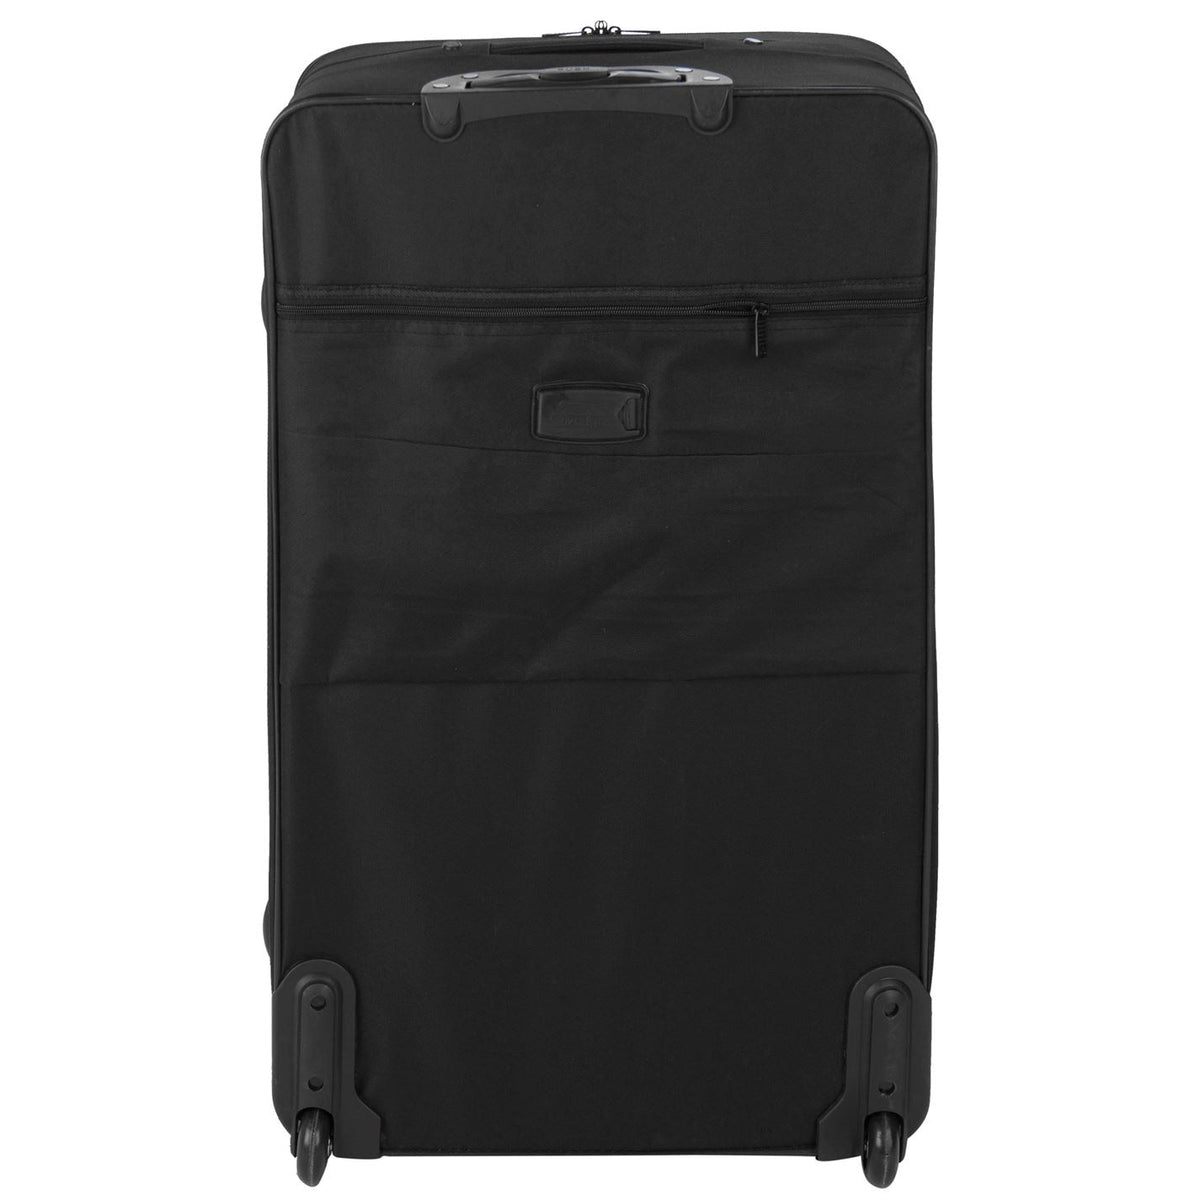 it Luggage  Glitzy - 5pc Set in Black